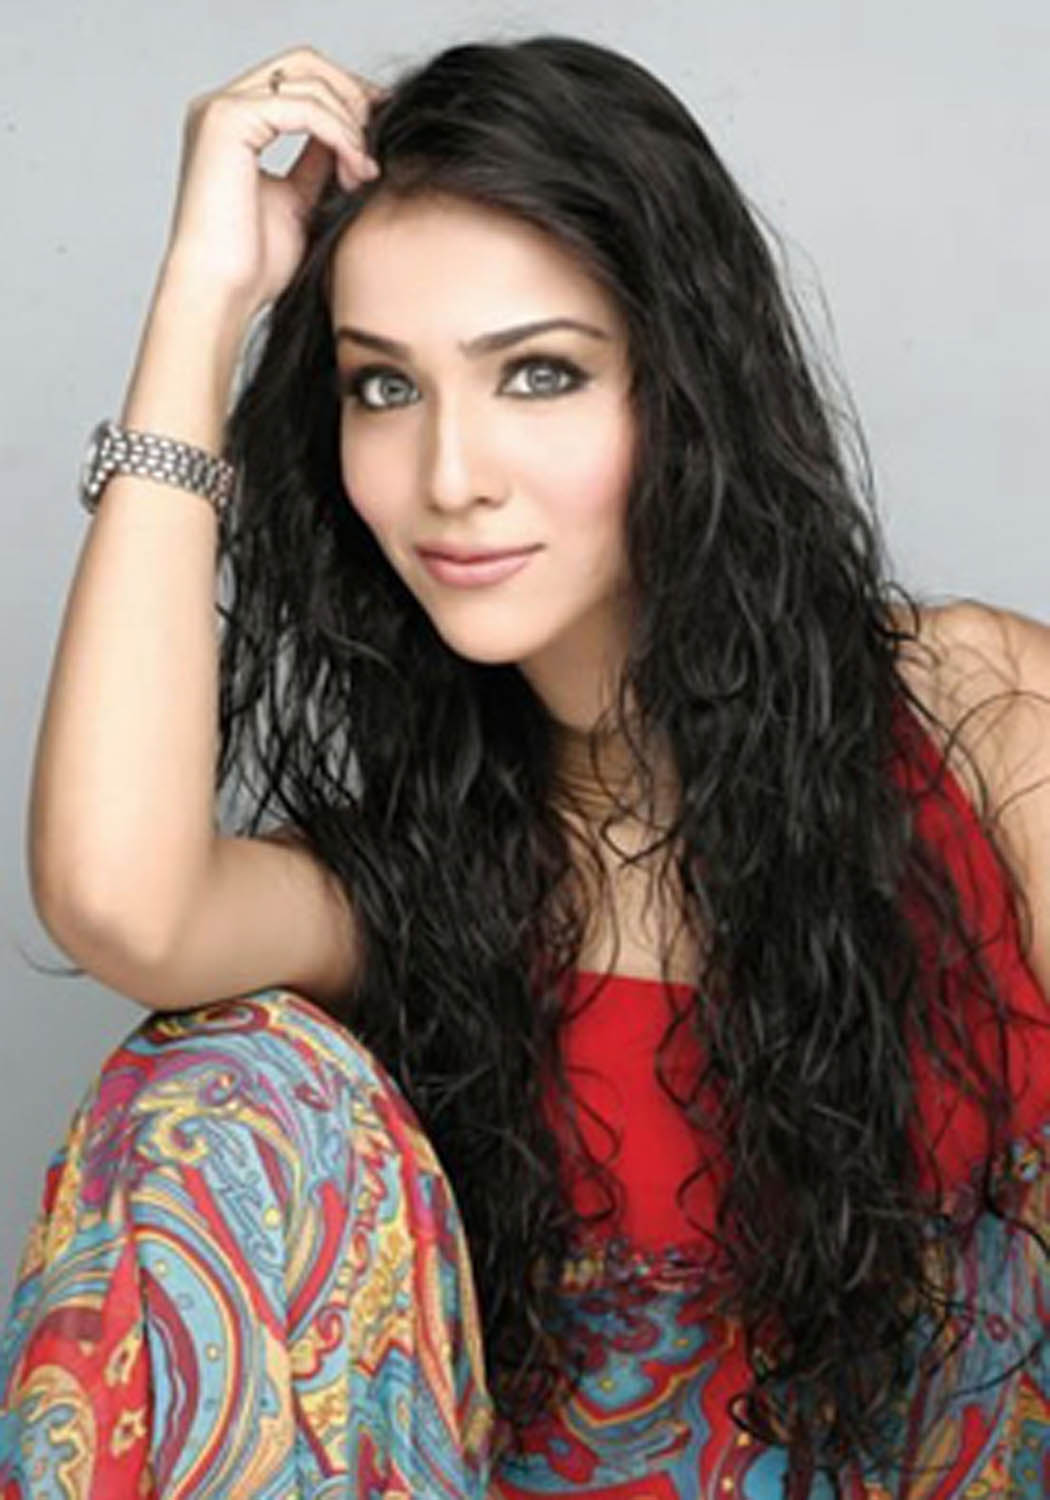 Beautiful Pakistani Woman - Humaima Malik , HD Wallpaper & Backgrounds